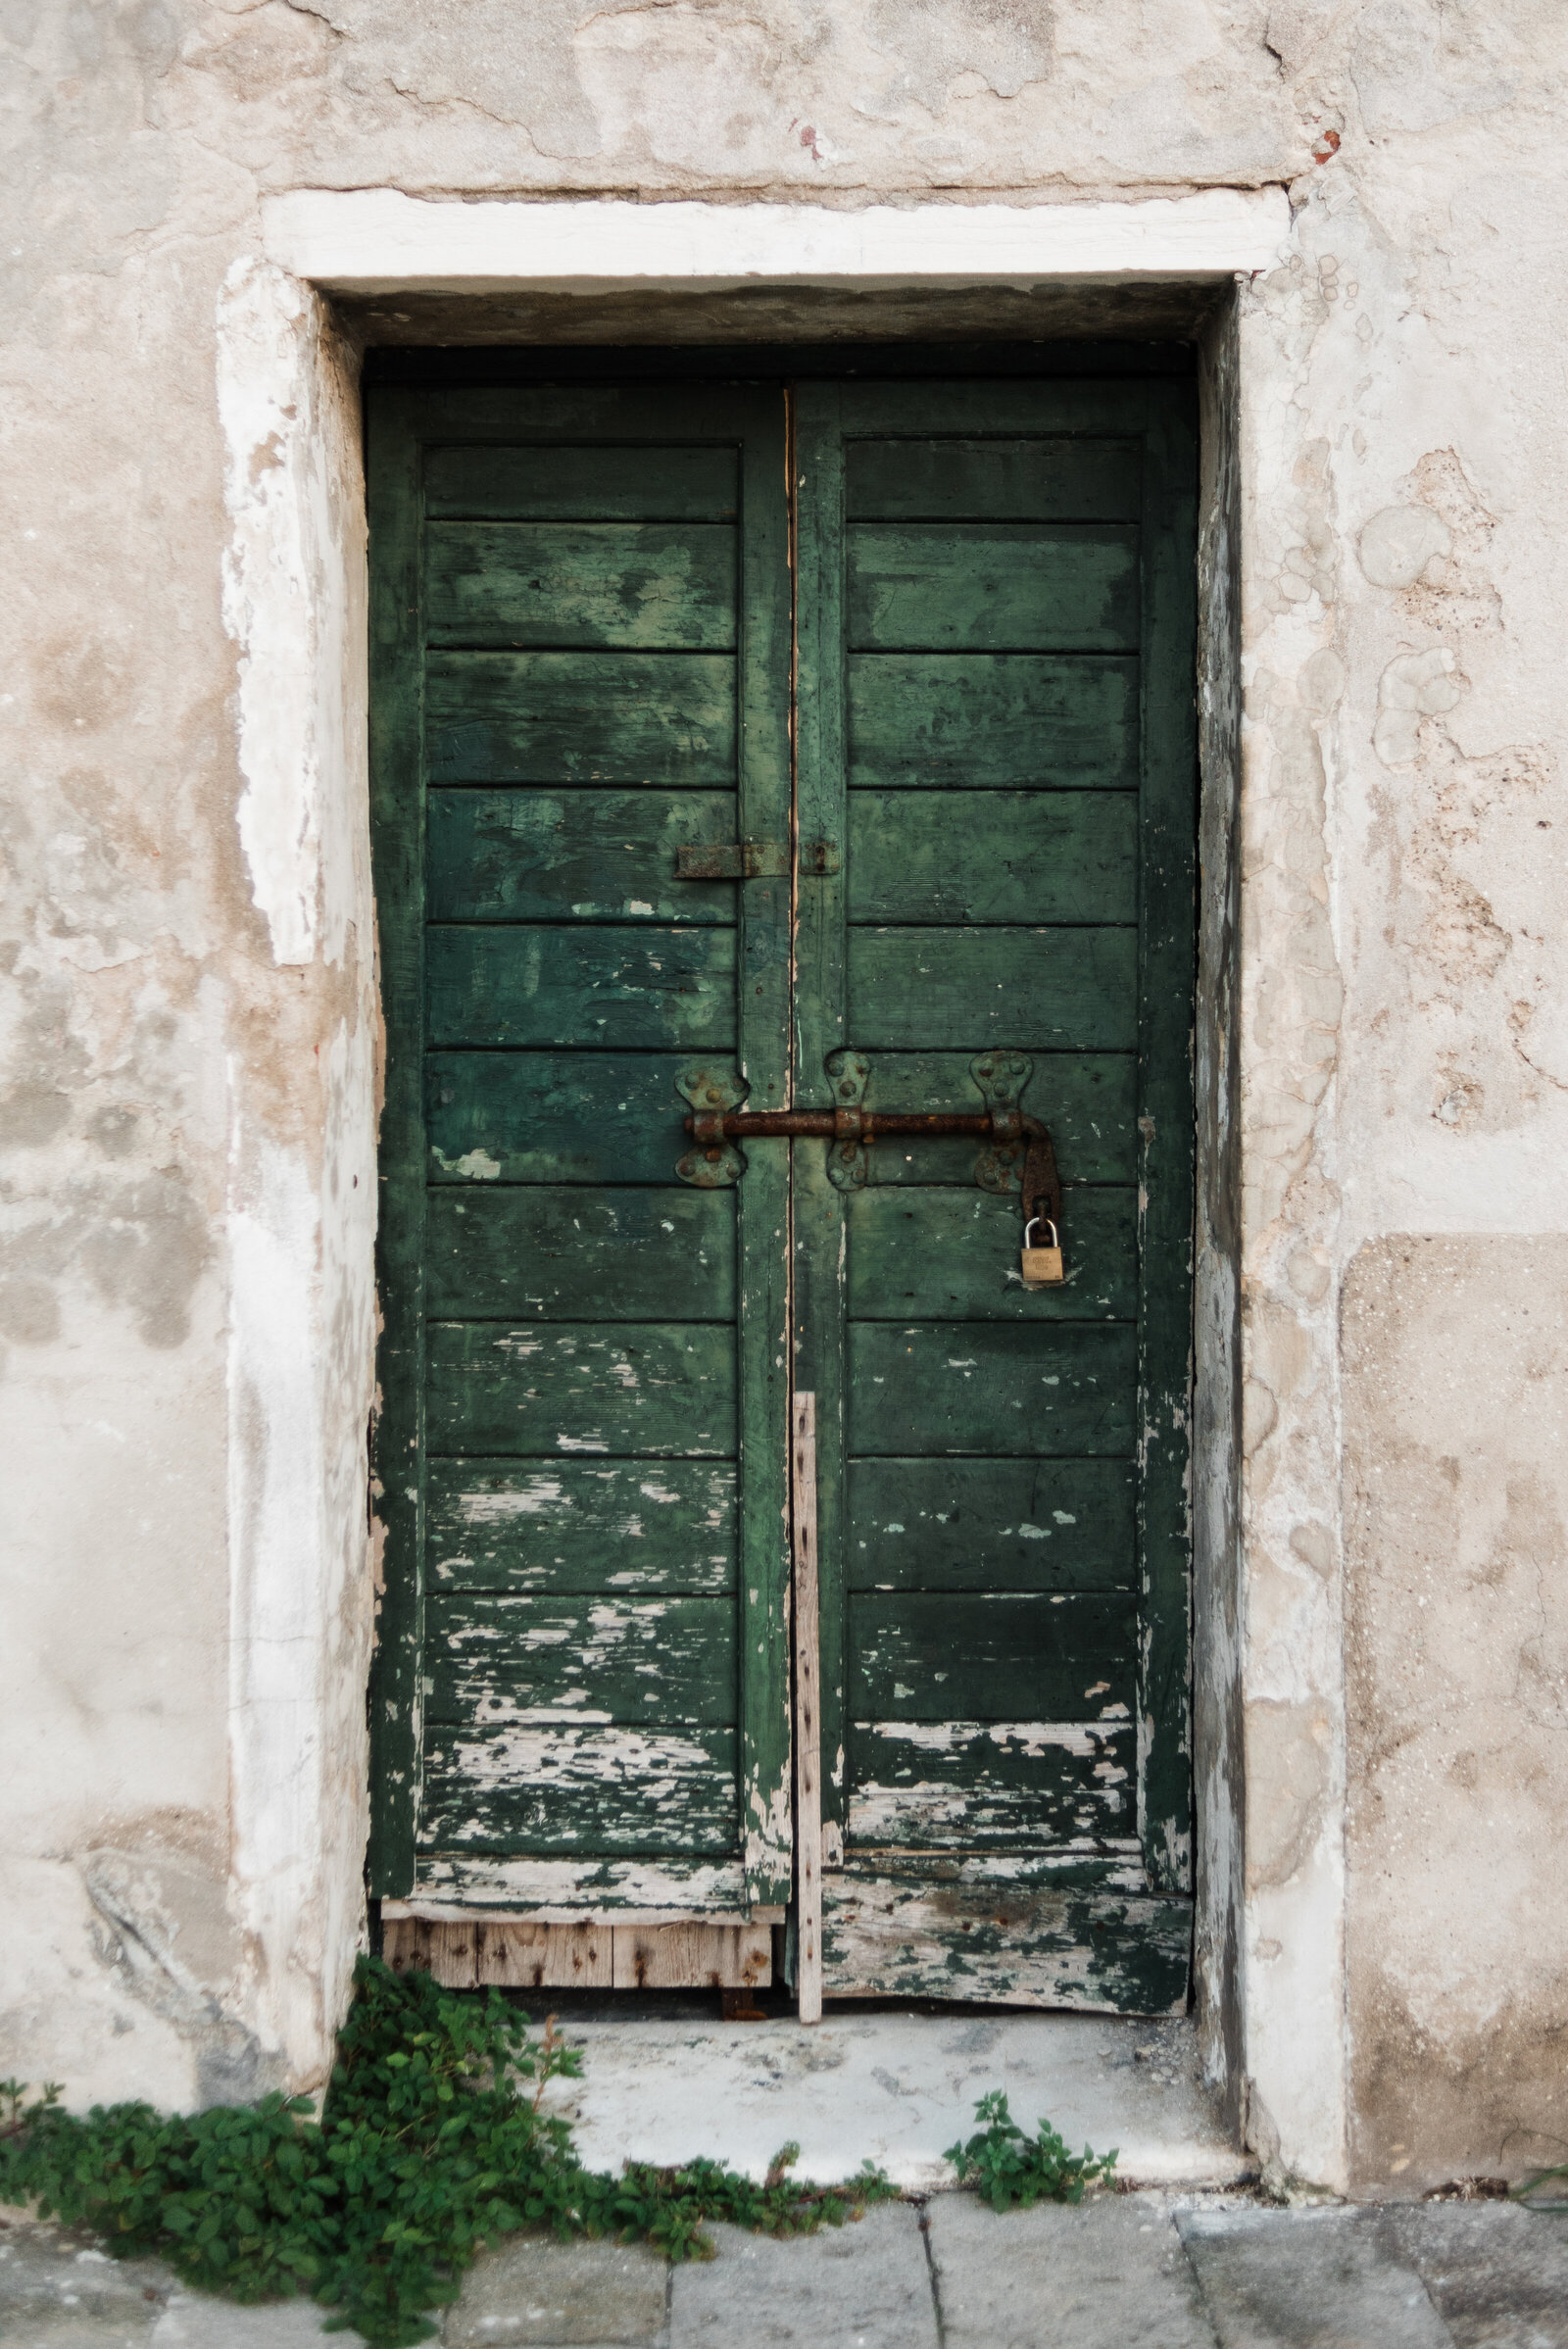 Green door in Venice, Italy